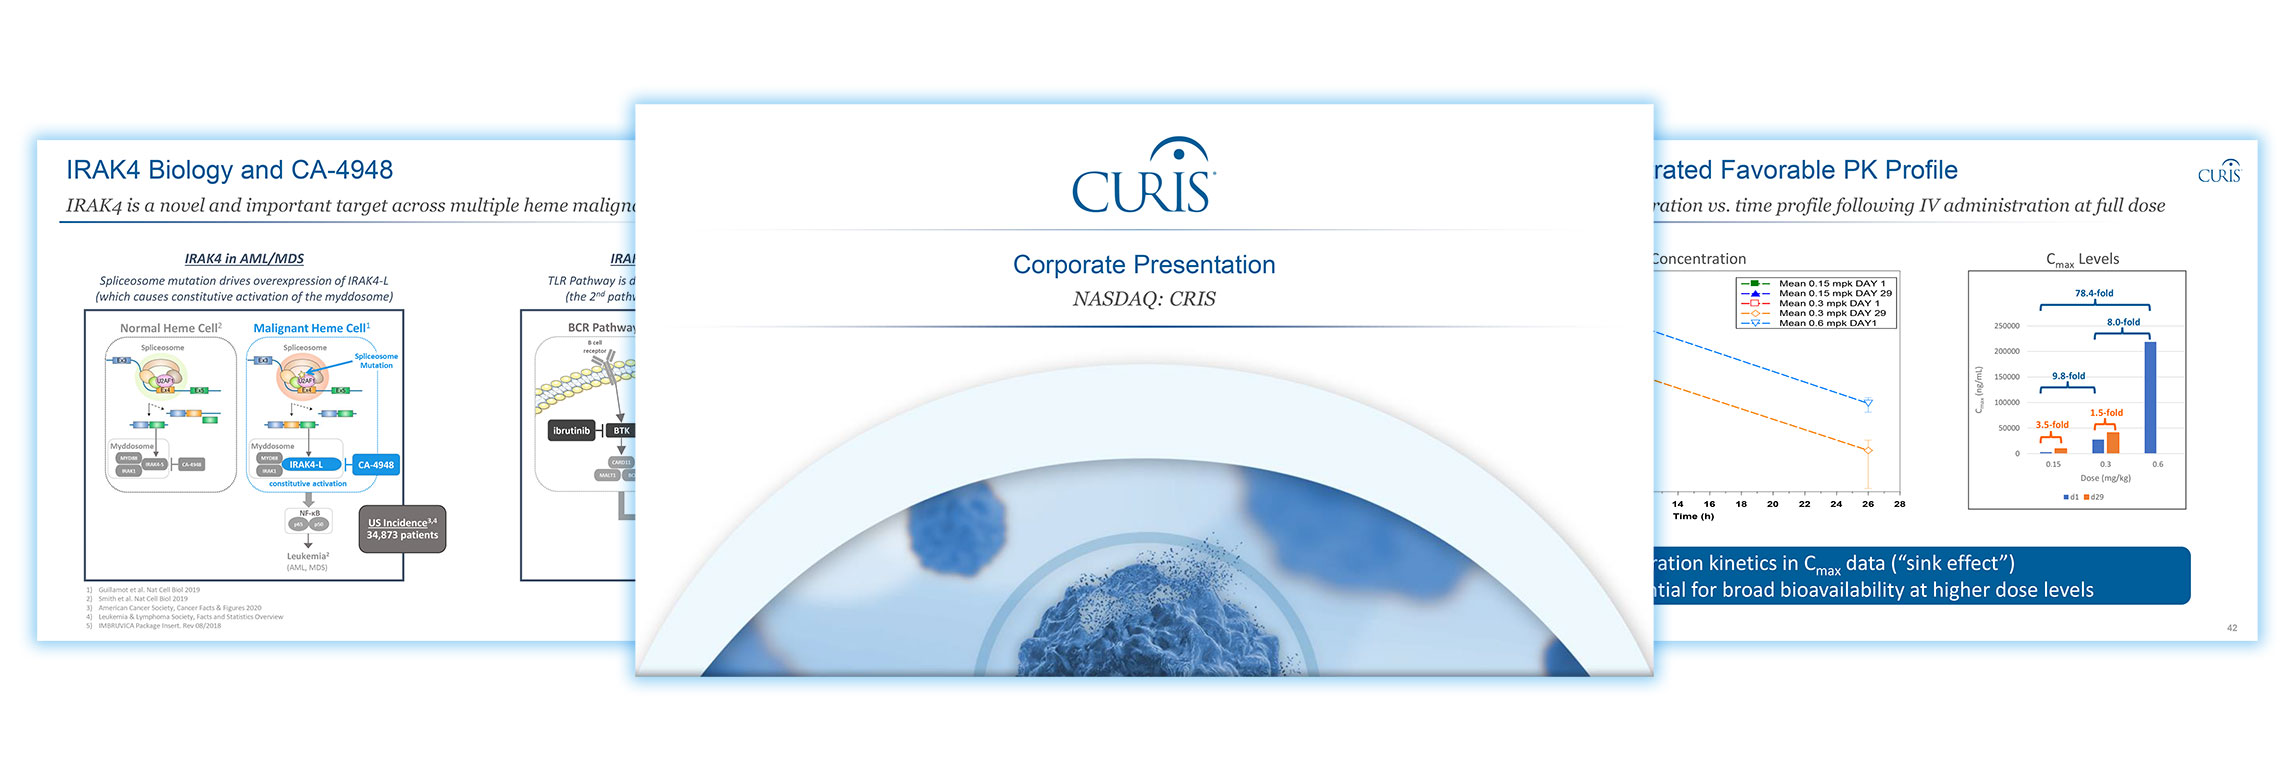 Curis Corporate Presentation